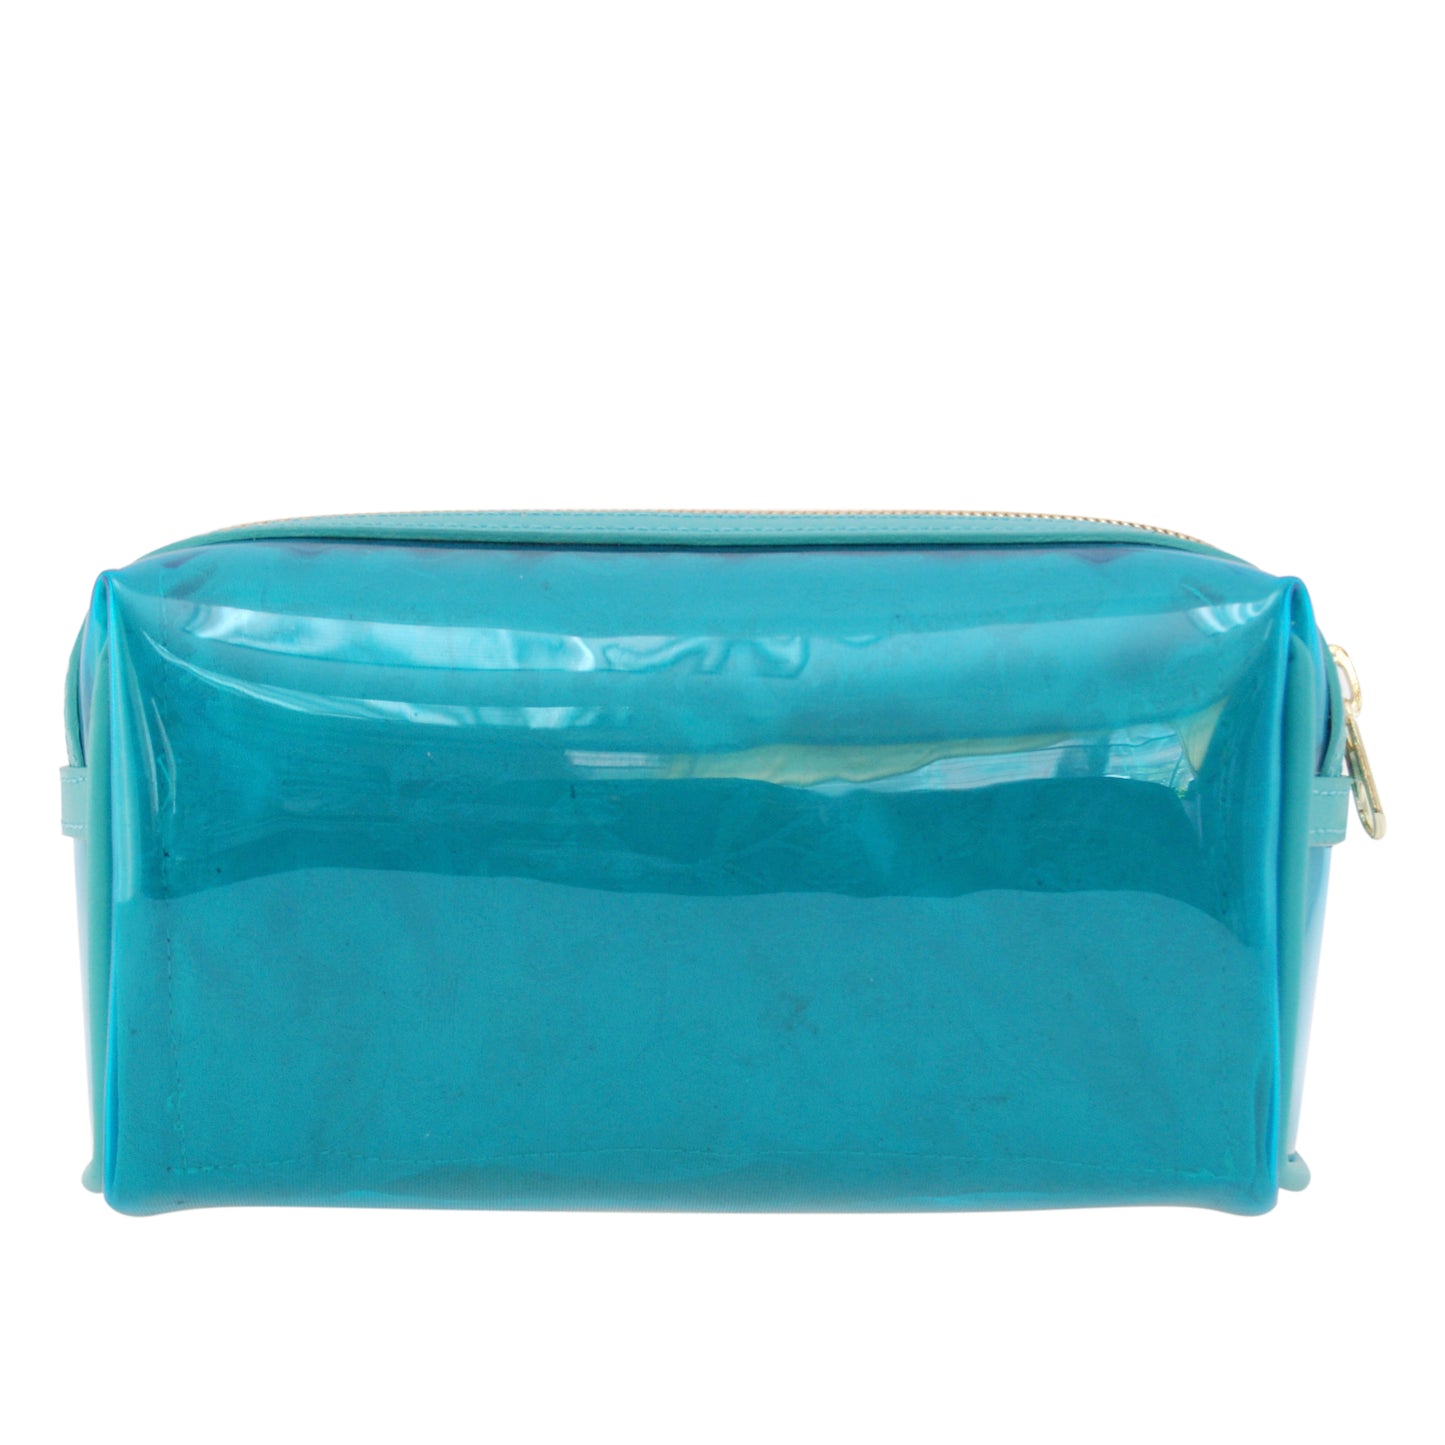 PRIMULA: Túi đựng đồ trang điểm/vệ sinh cá nhân